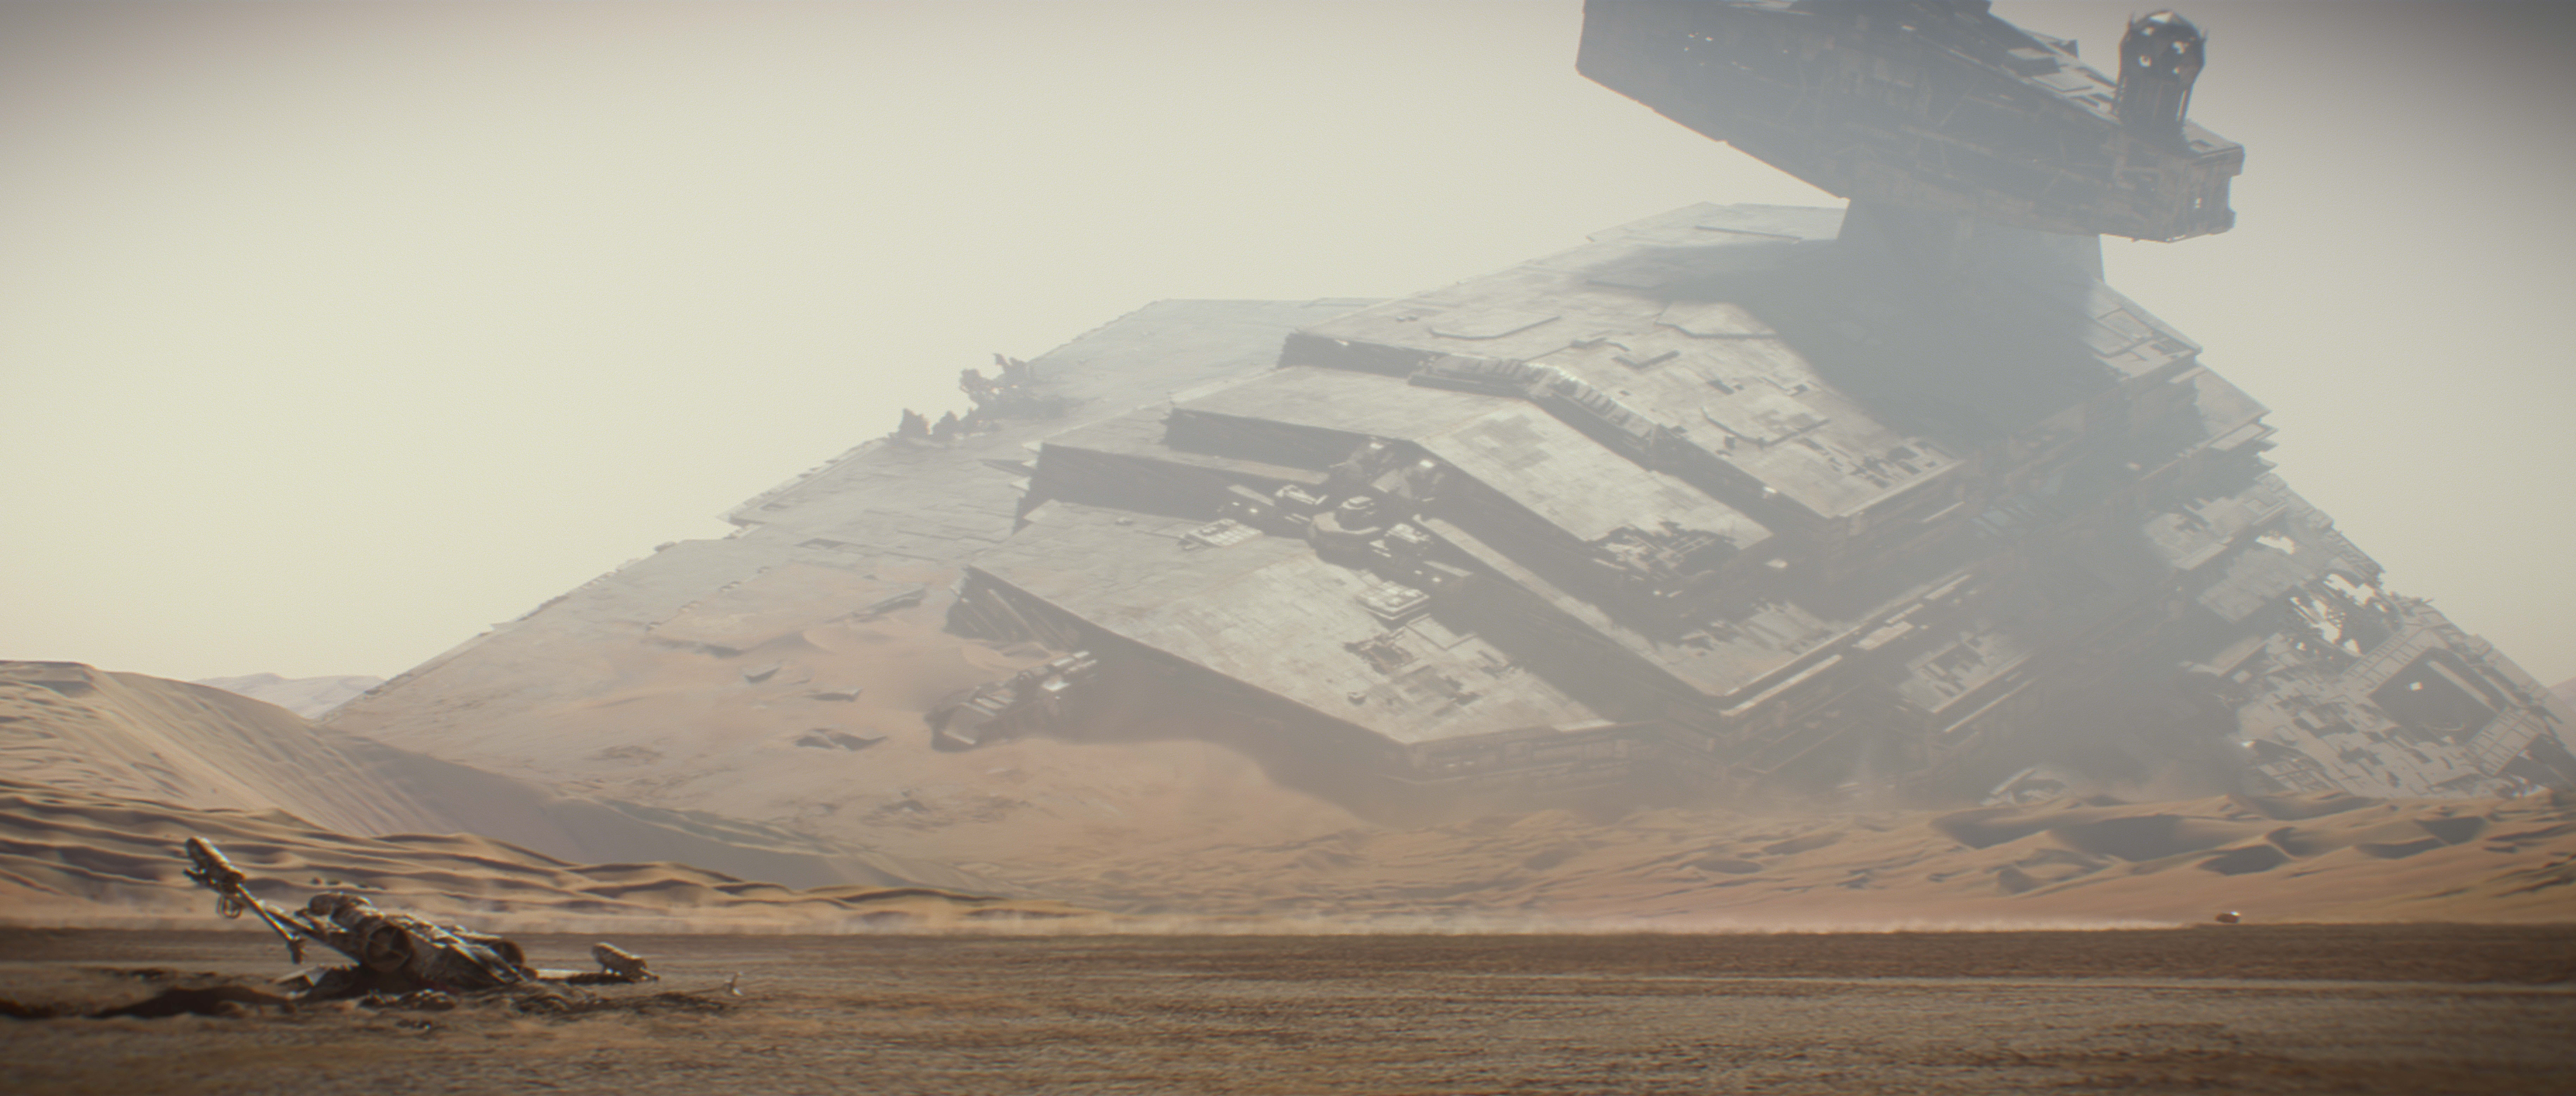 Star Wars Landscape Wallpaper HD Wallpaper